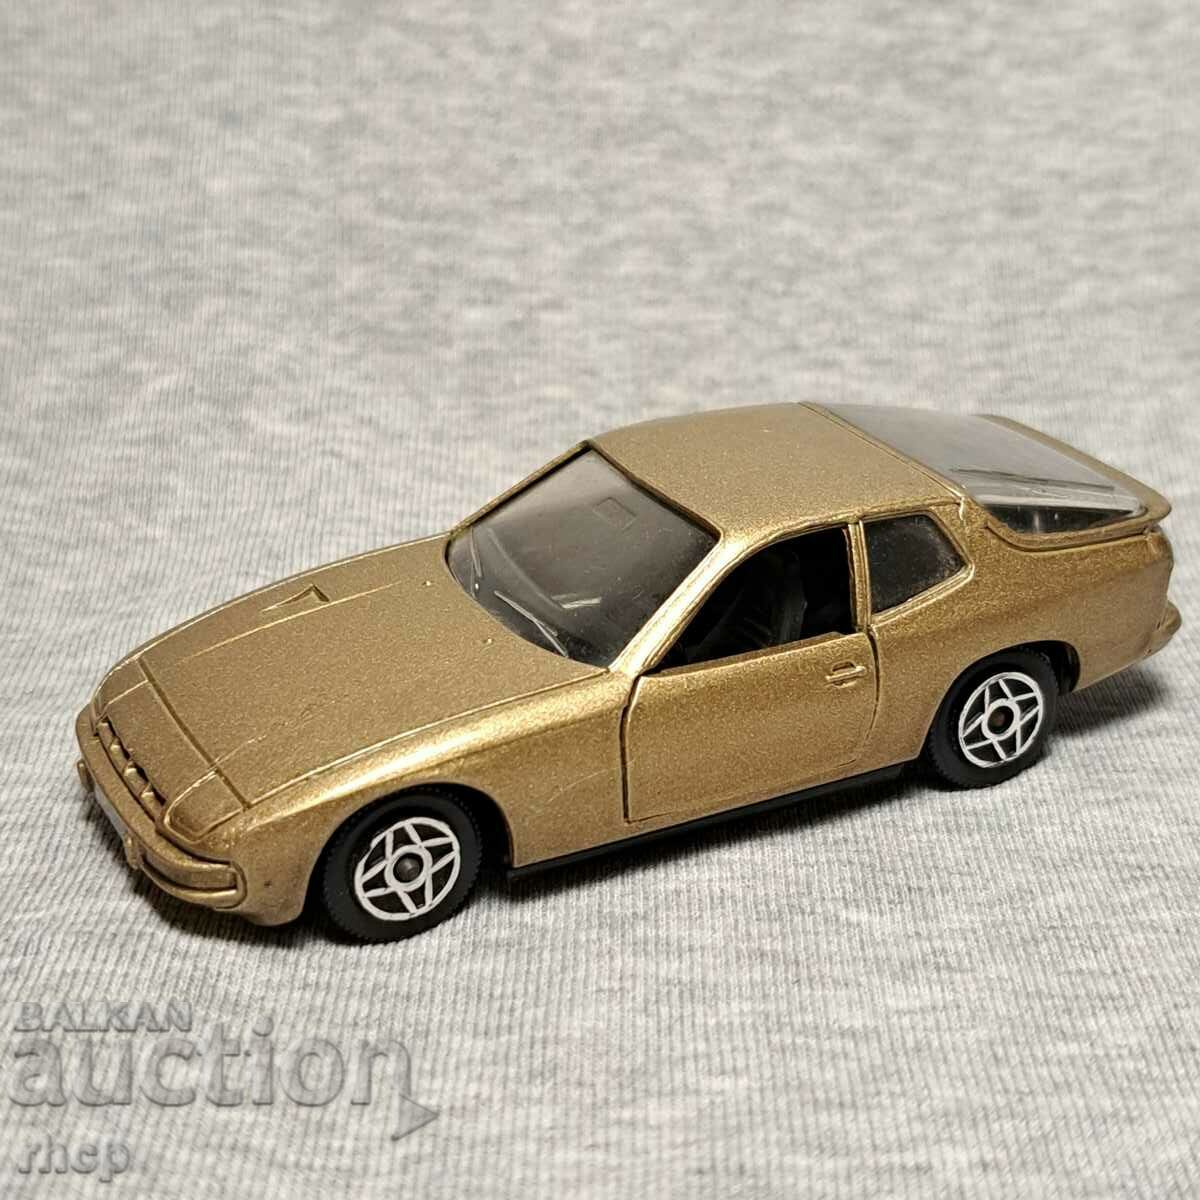 Porsche 924 Solido toy car model 1:43